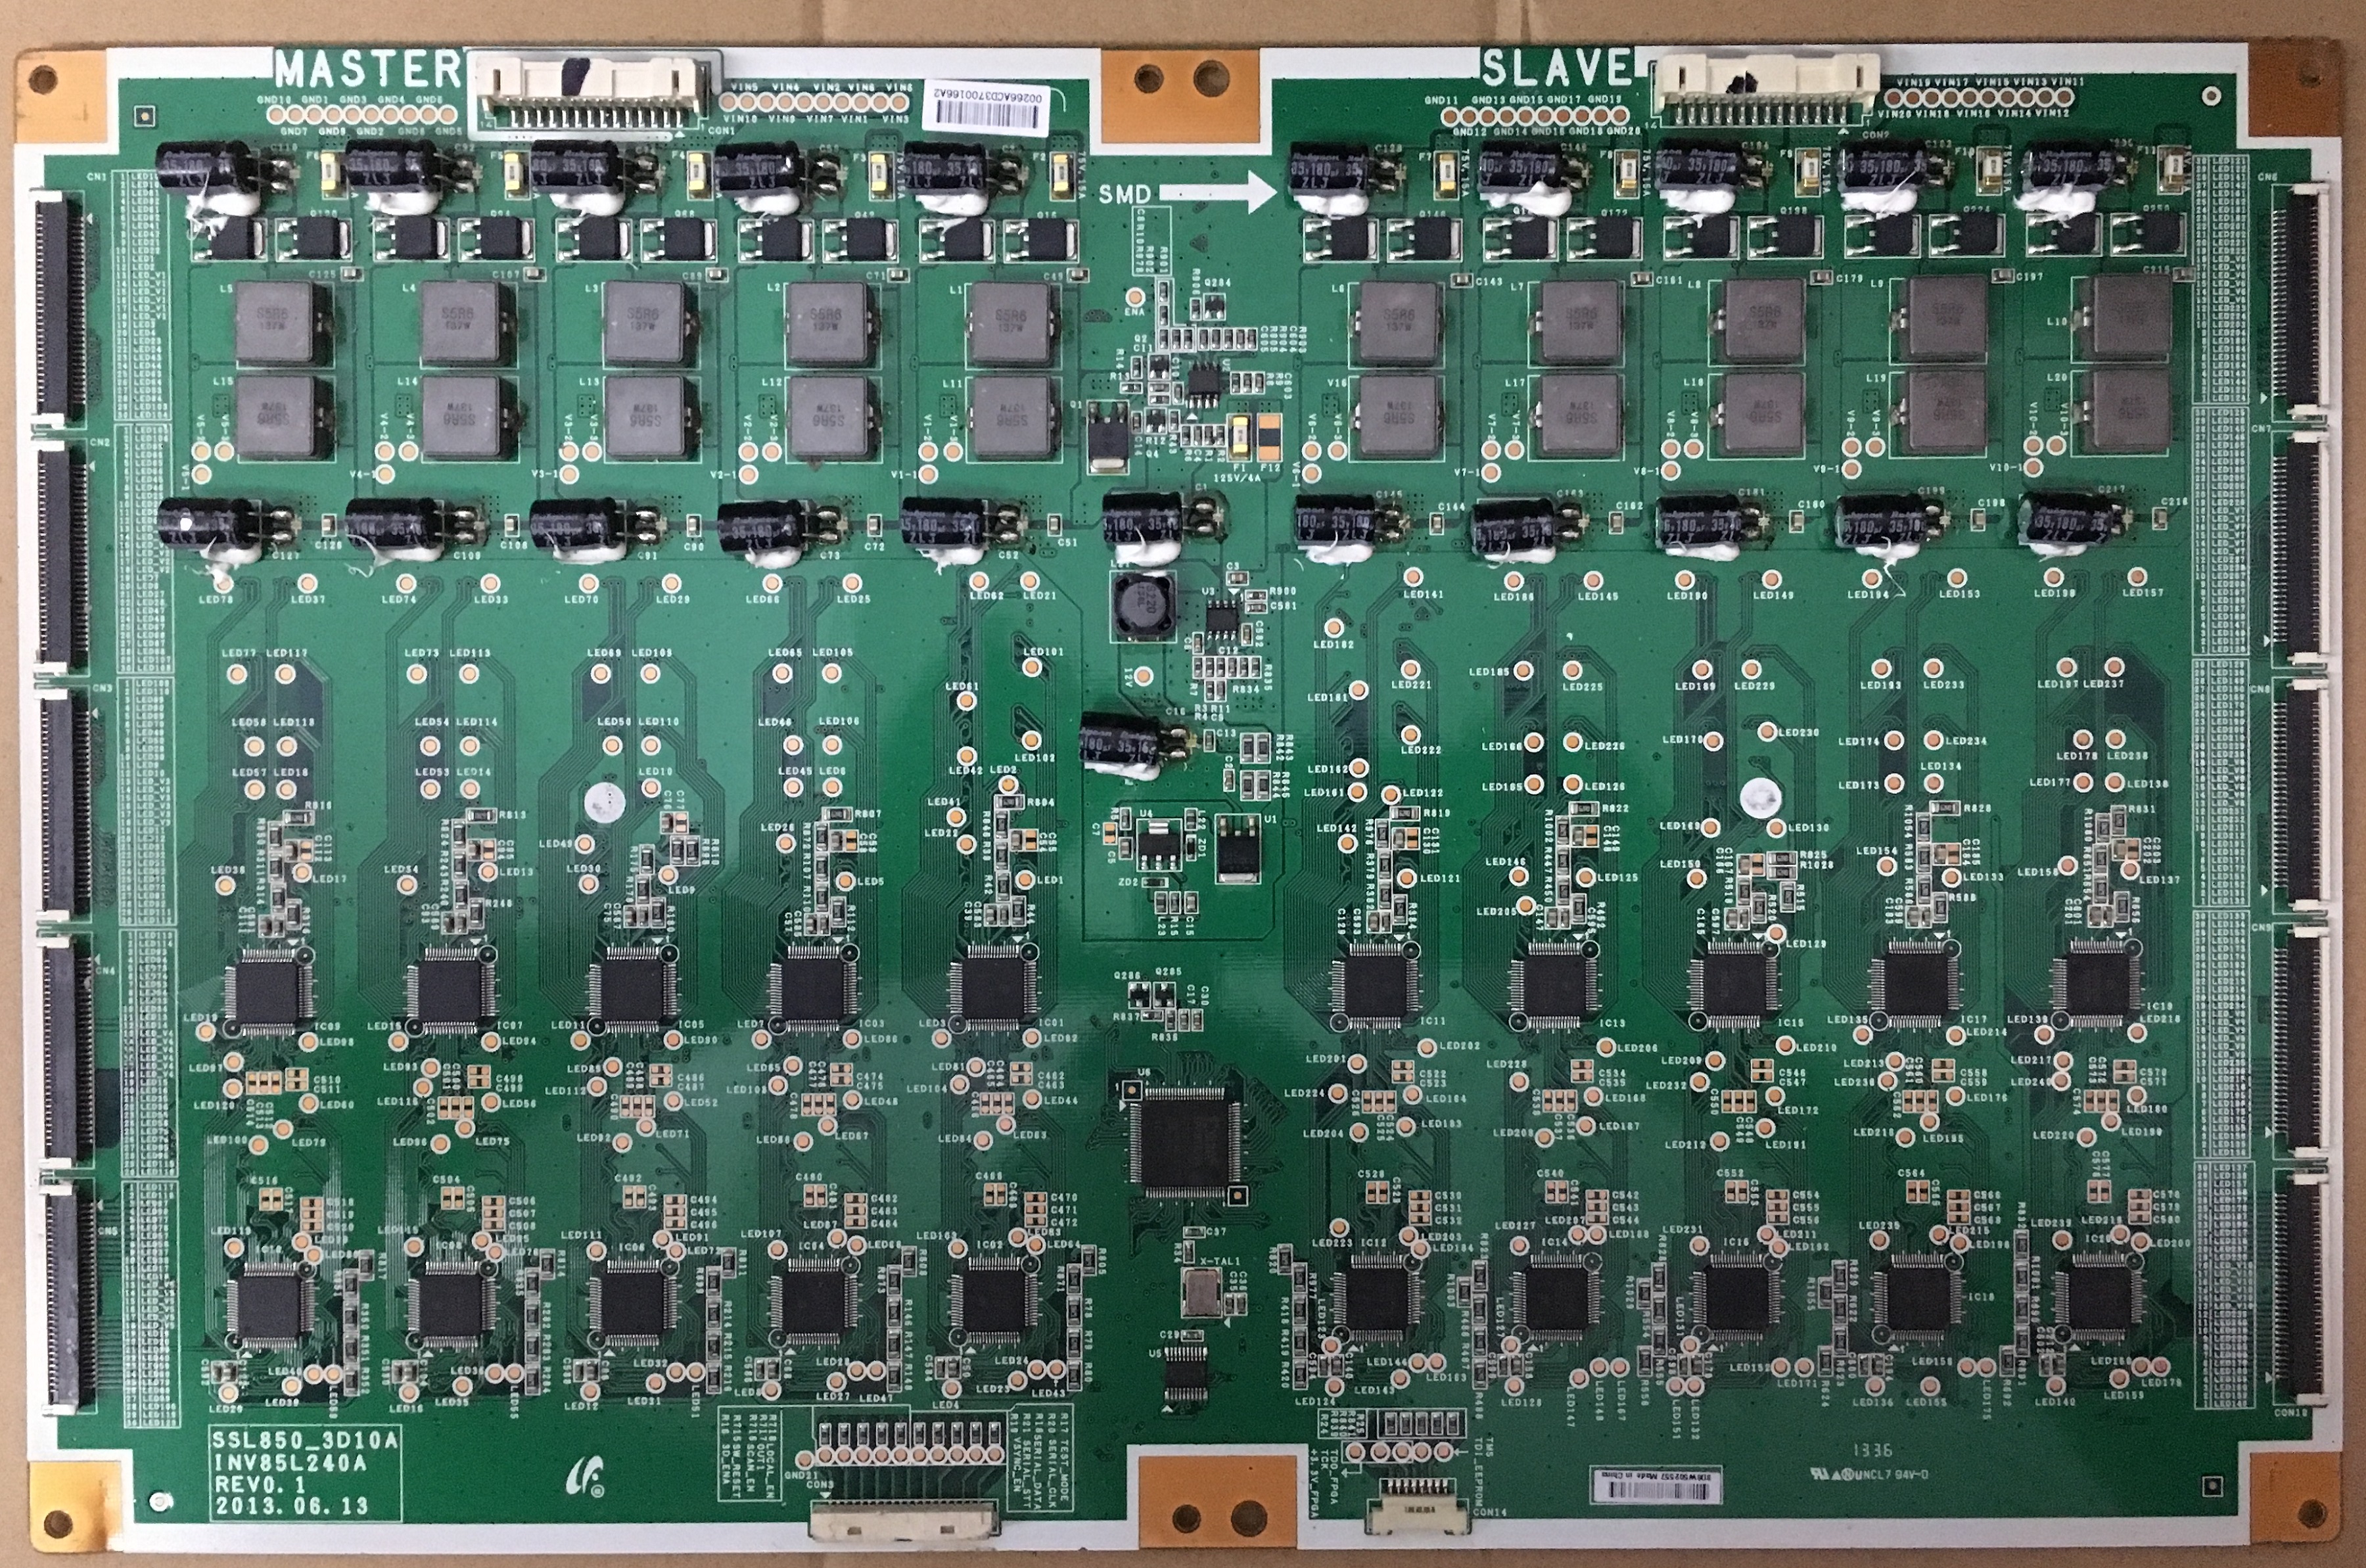 SSL850_3D10A INV85L240A REV0.1 for samsung LTA850FJ01 Panel